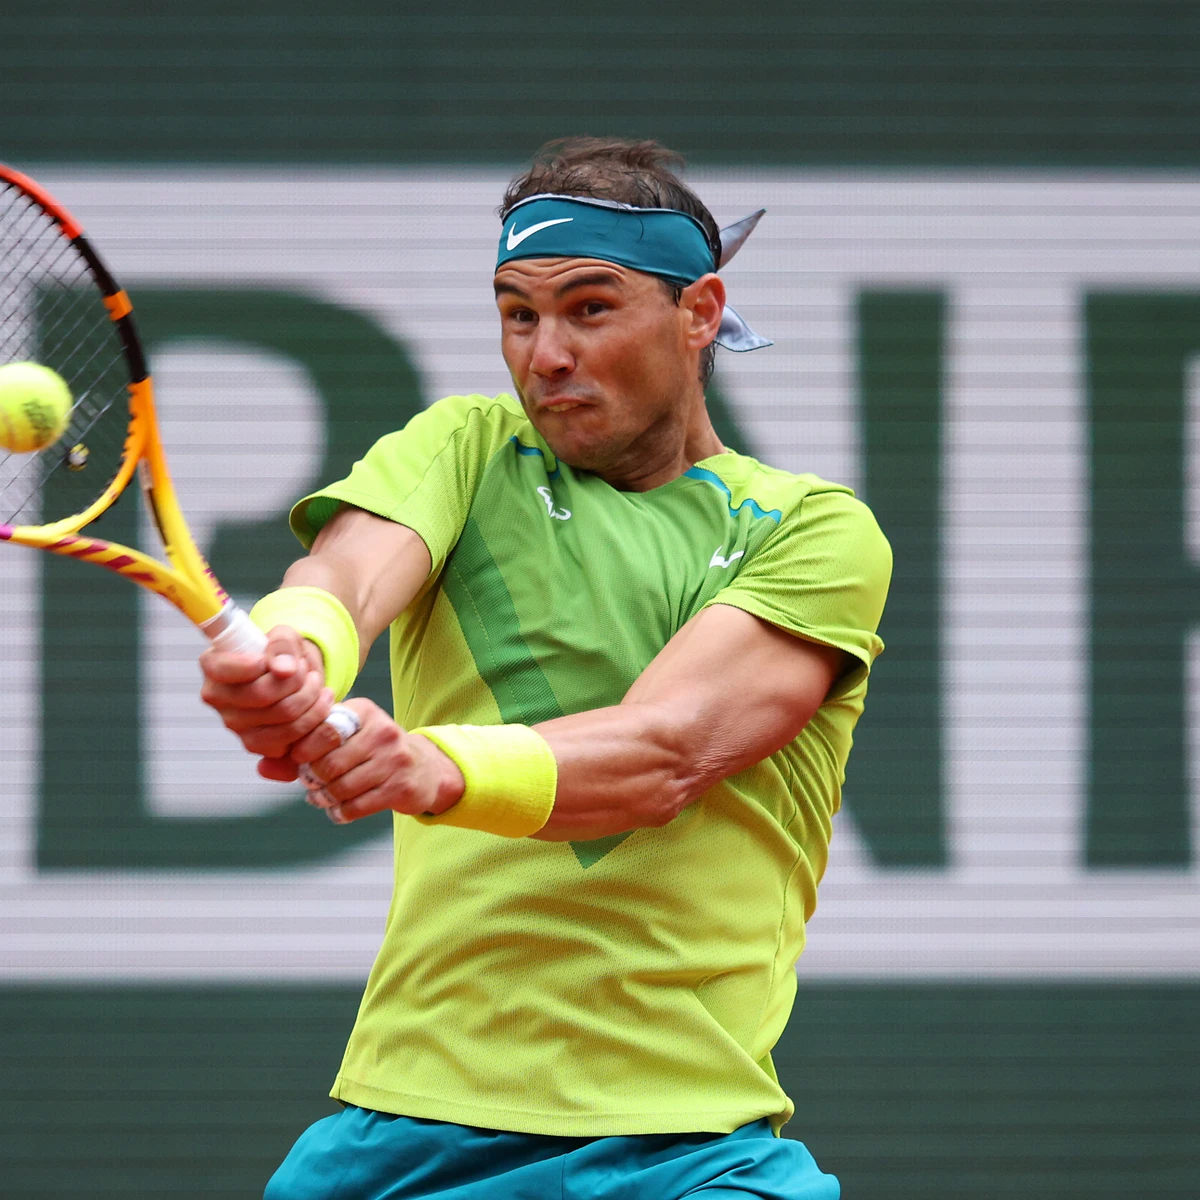 Nadal - Jordan Thompson: Resultado y resumen del partido de tenis del Roland 2022, en directo (6-2, 6-2, 6-2)